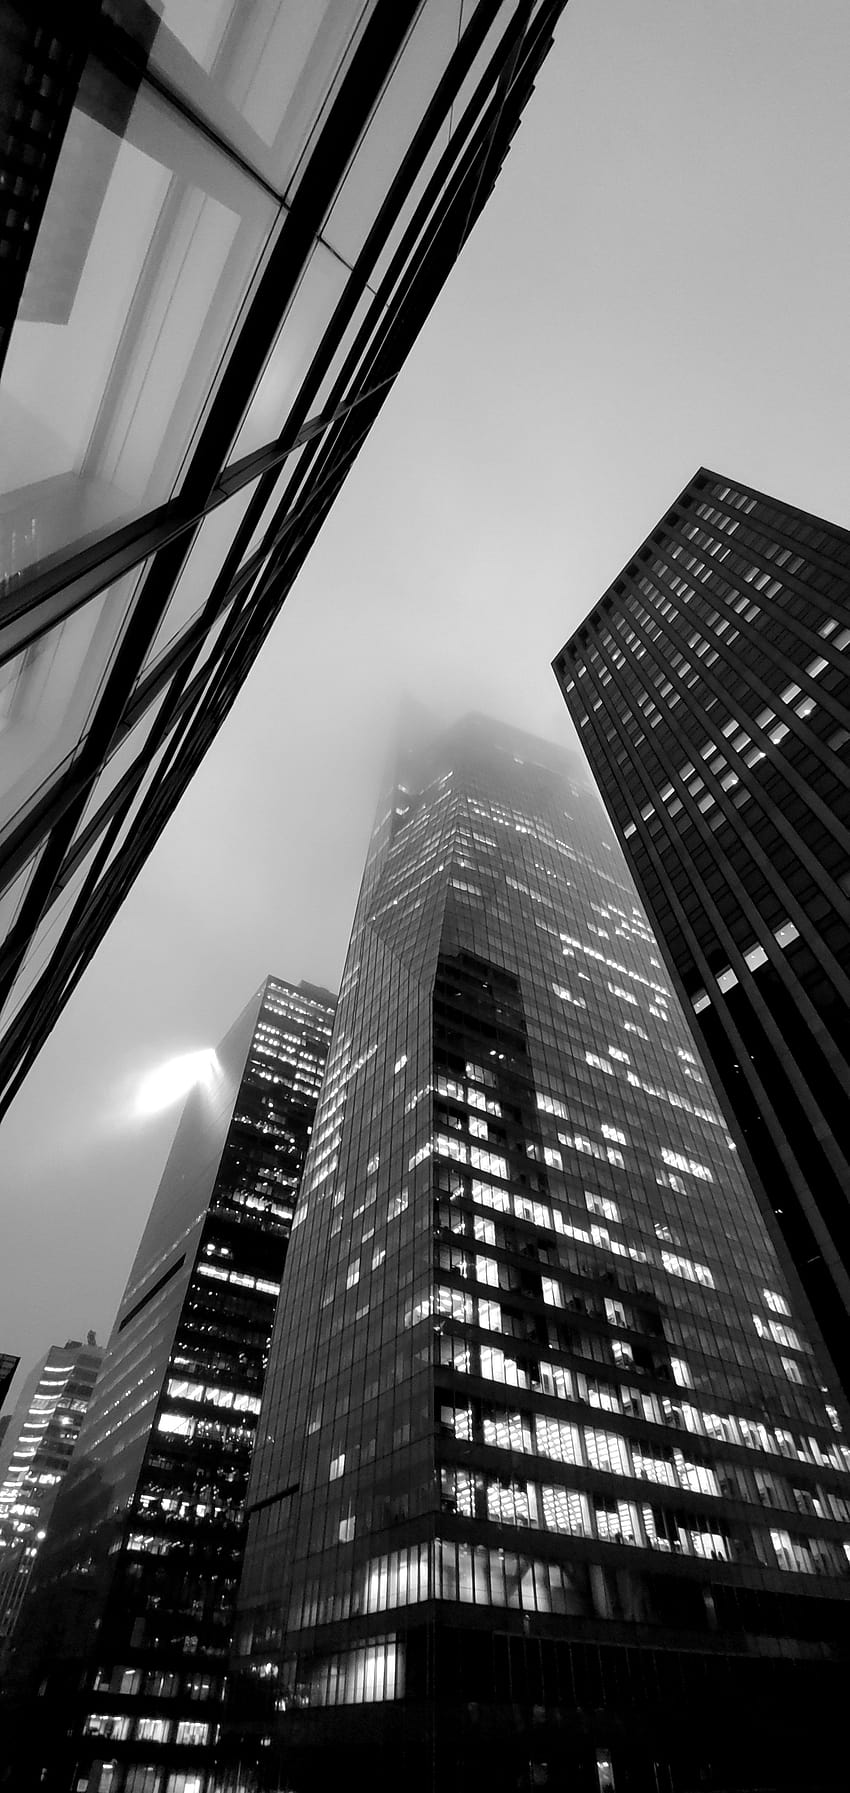 : ニューヨーク市, 黒, 白, 建物, 建築, 雲, モノクロ, 超高層ビル, 垂直, グレー, ポートレート表示, 曇った, 霧, 都市, 街の明かり 2184x4608, 黒と白の肖像 HD電話の壁紙